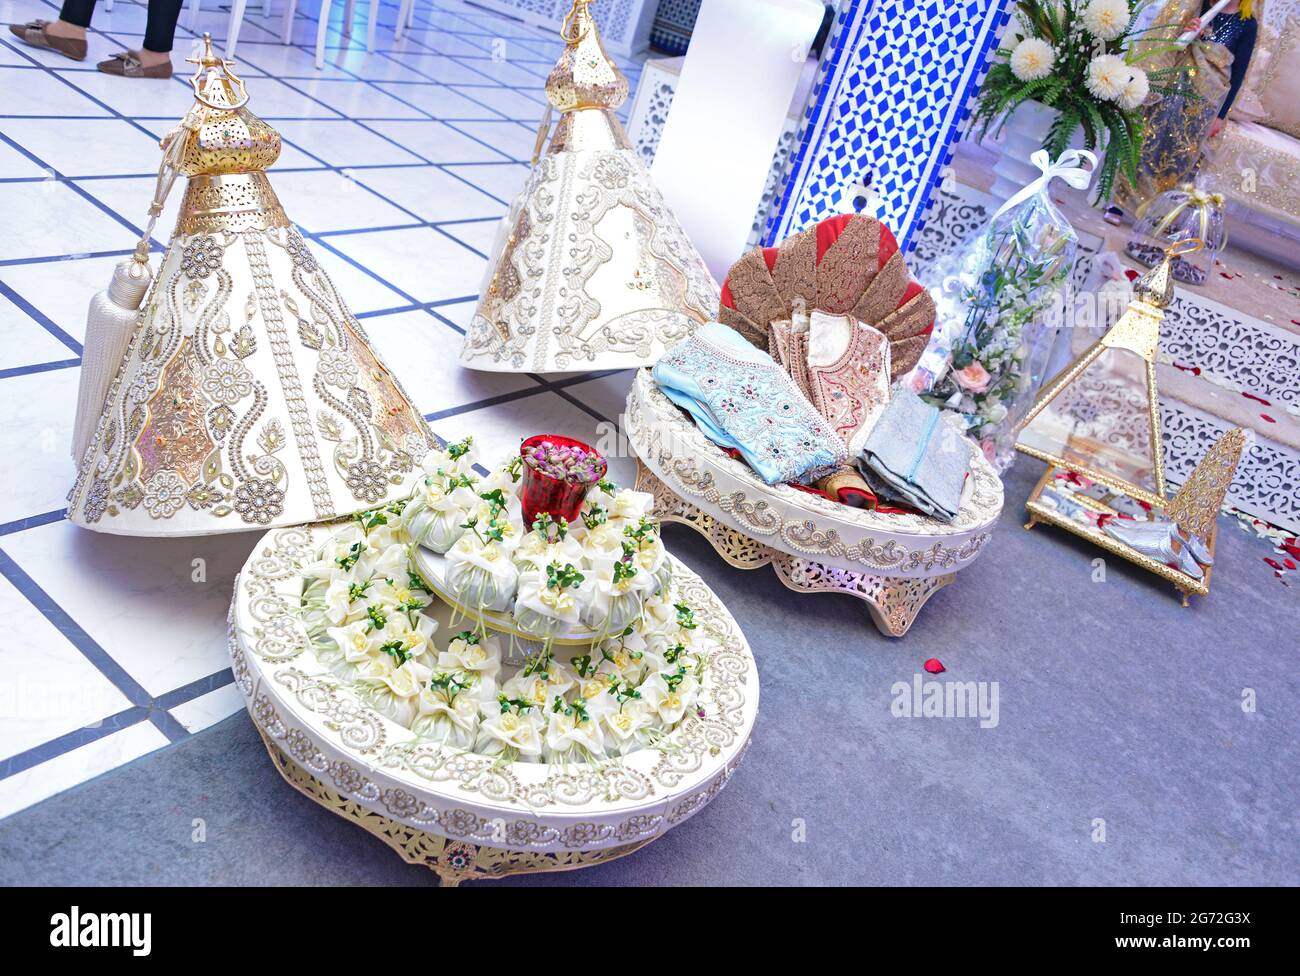 Tiffer marocchino, contenitori regalo tradizionali per la cerimonia nuziale, decorato con ricami dorati ornati.hennè marocchino. Regali di nozze marocchini Foto Stock